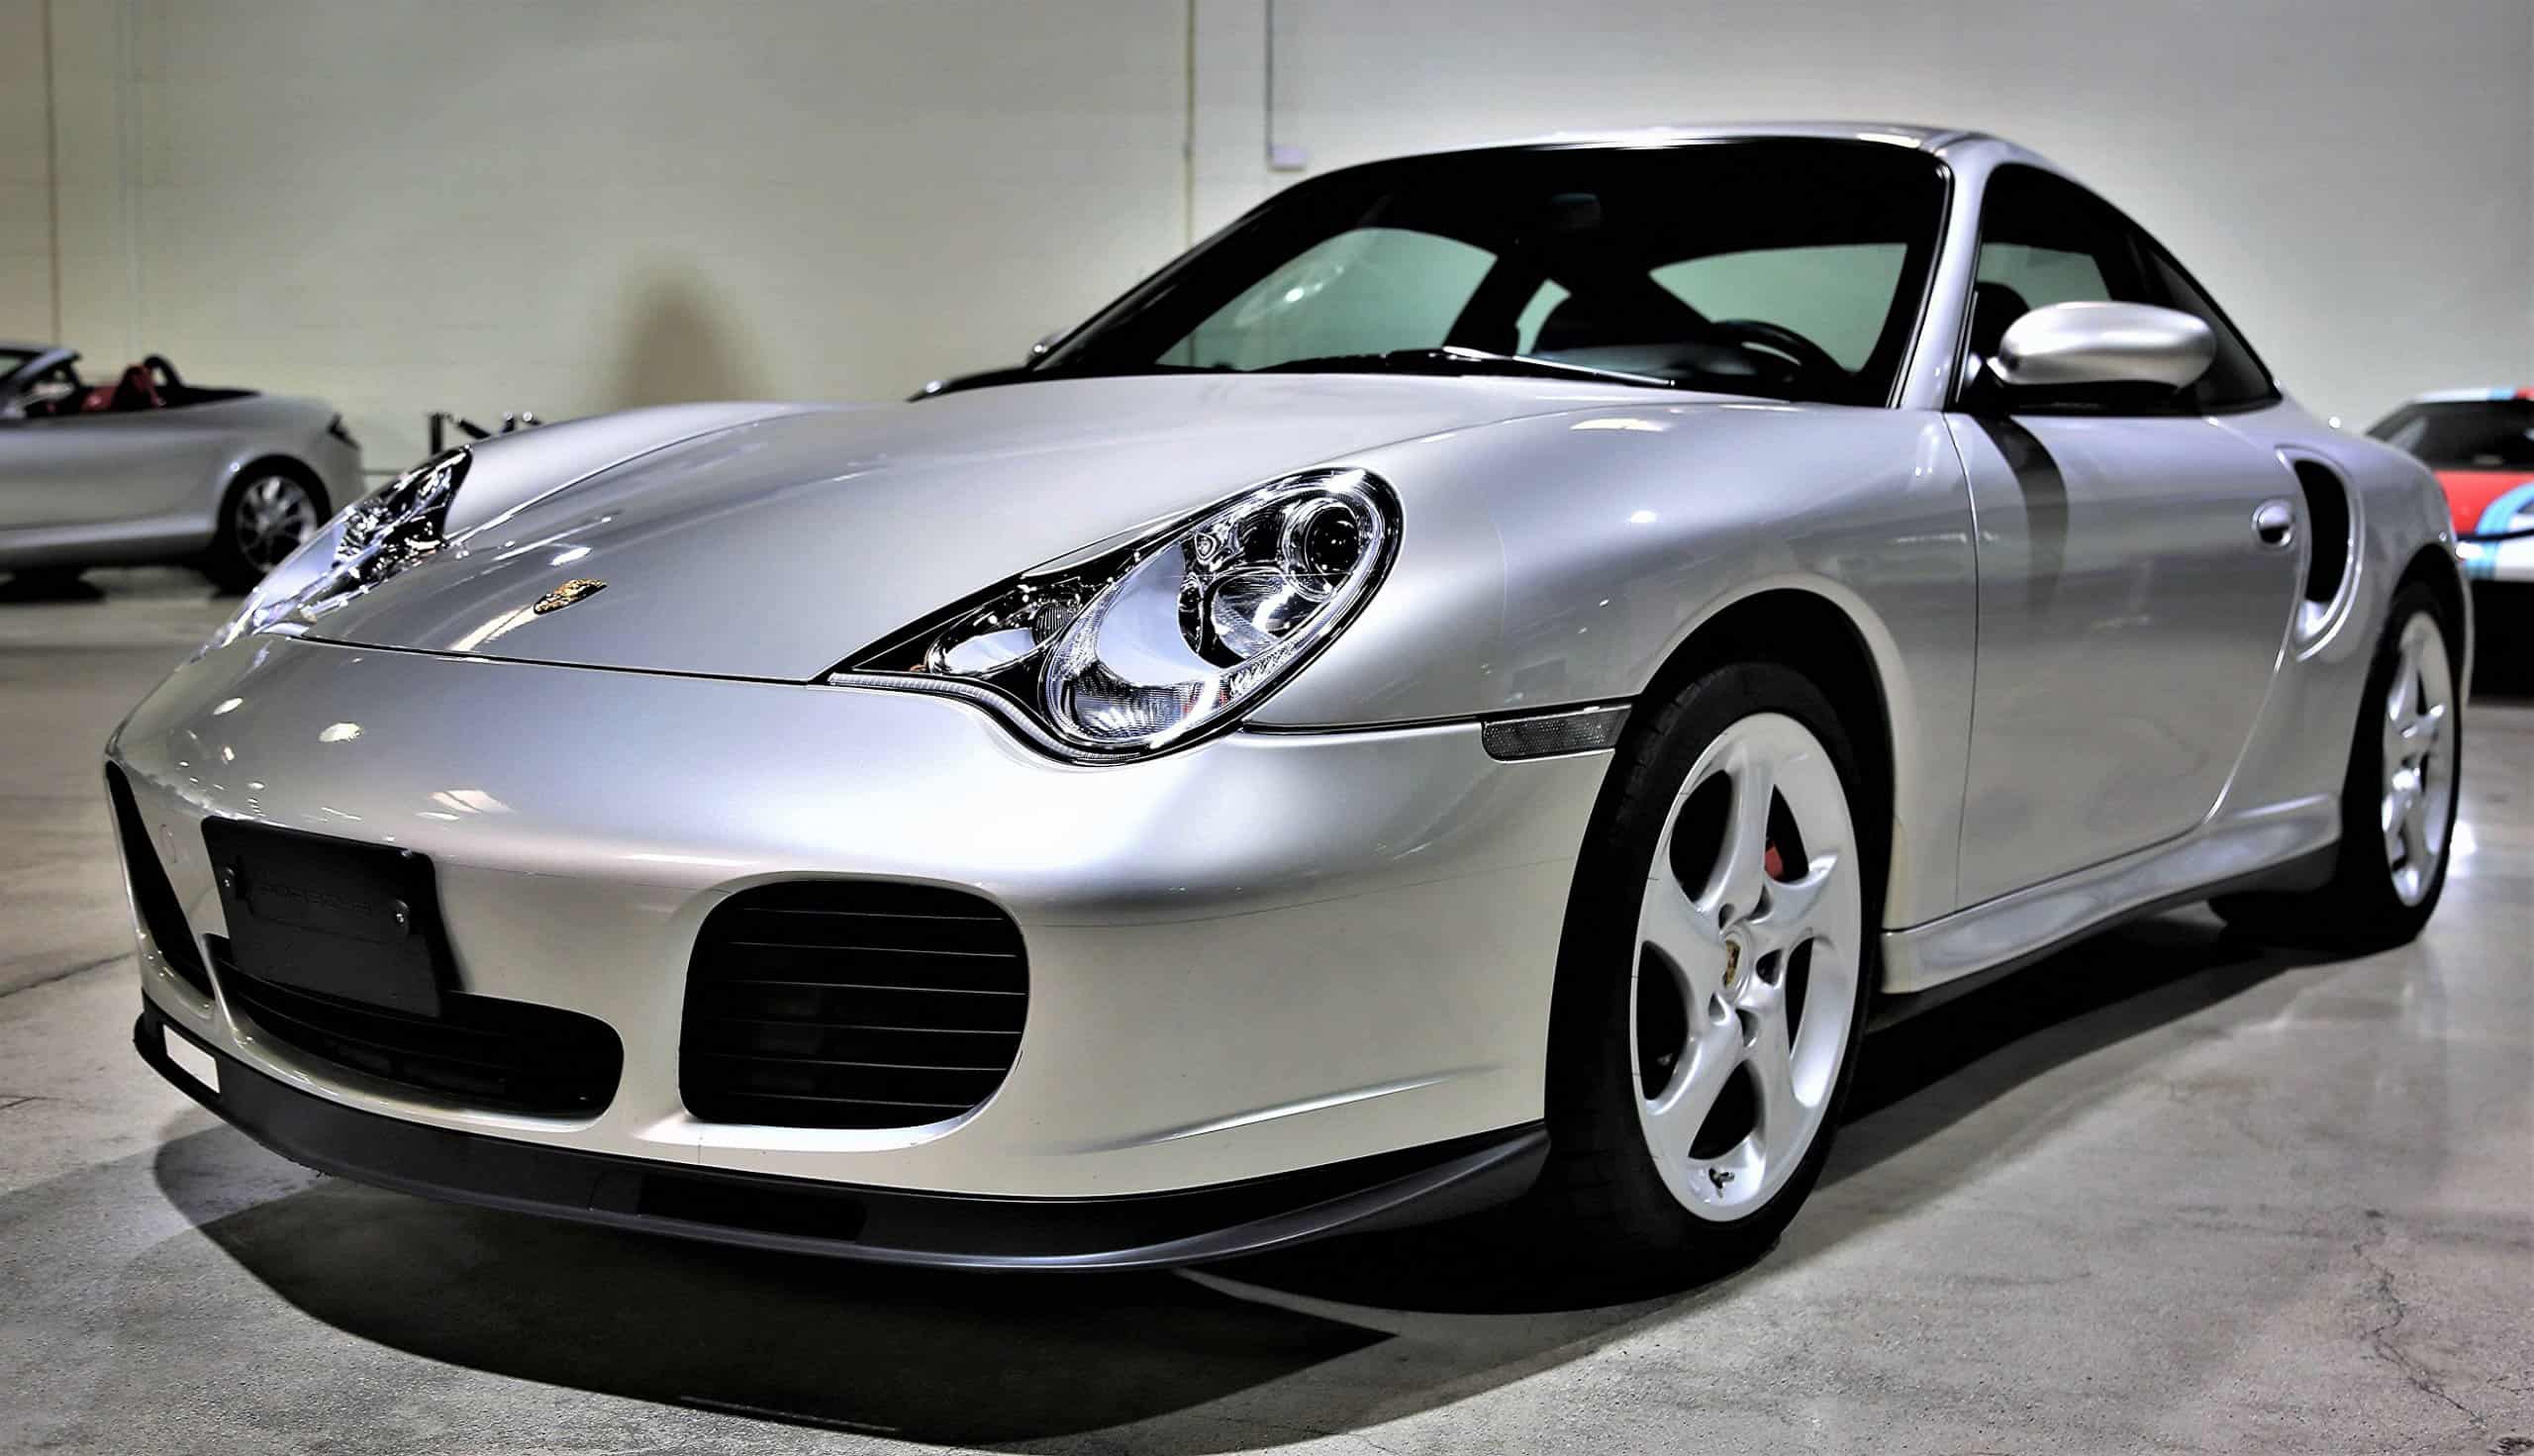 Pick of the Day: 2002 Porsche 911 Turbo, a 'pristine' low-mileage supercar